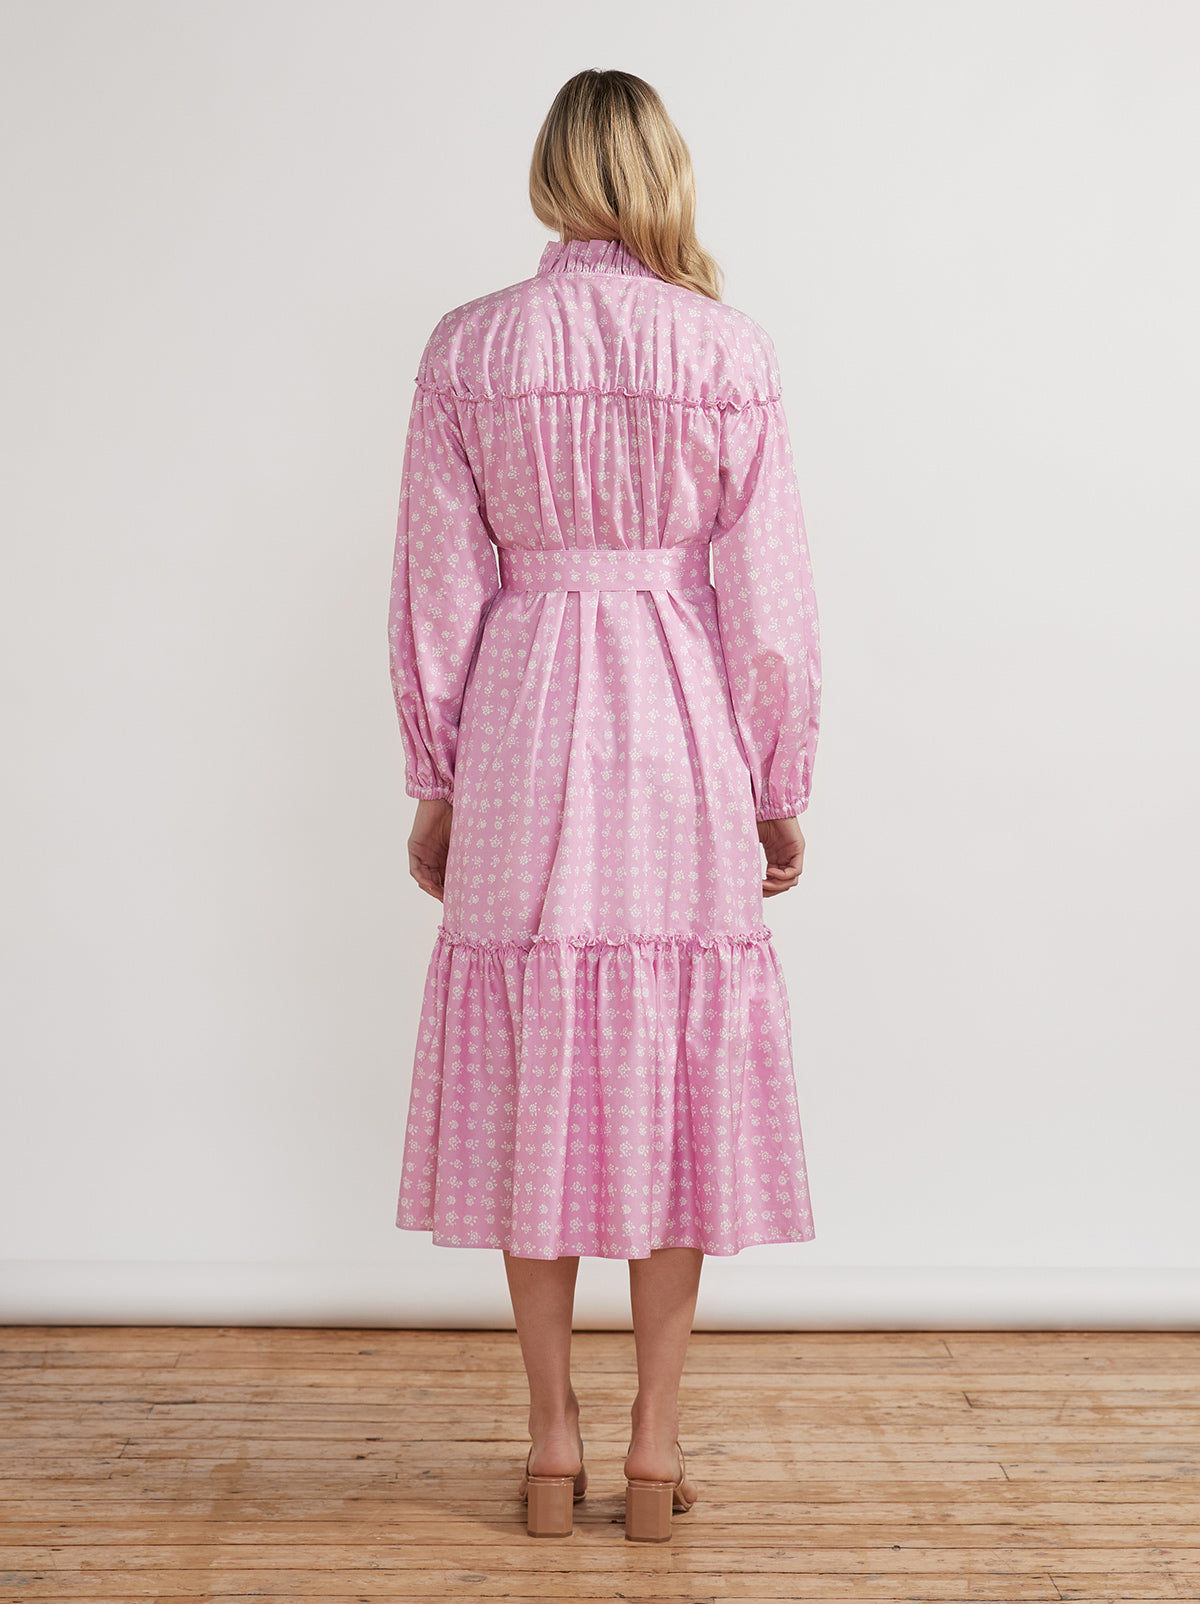 Joni Pink Floral Cotton Dress